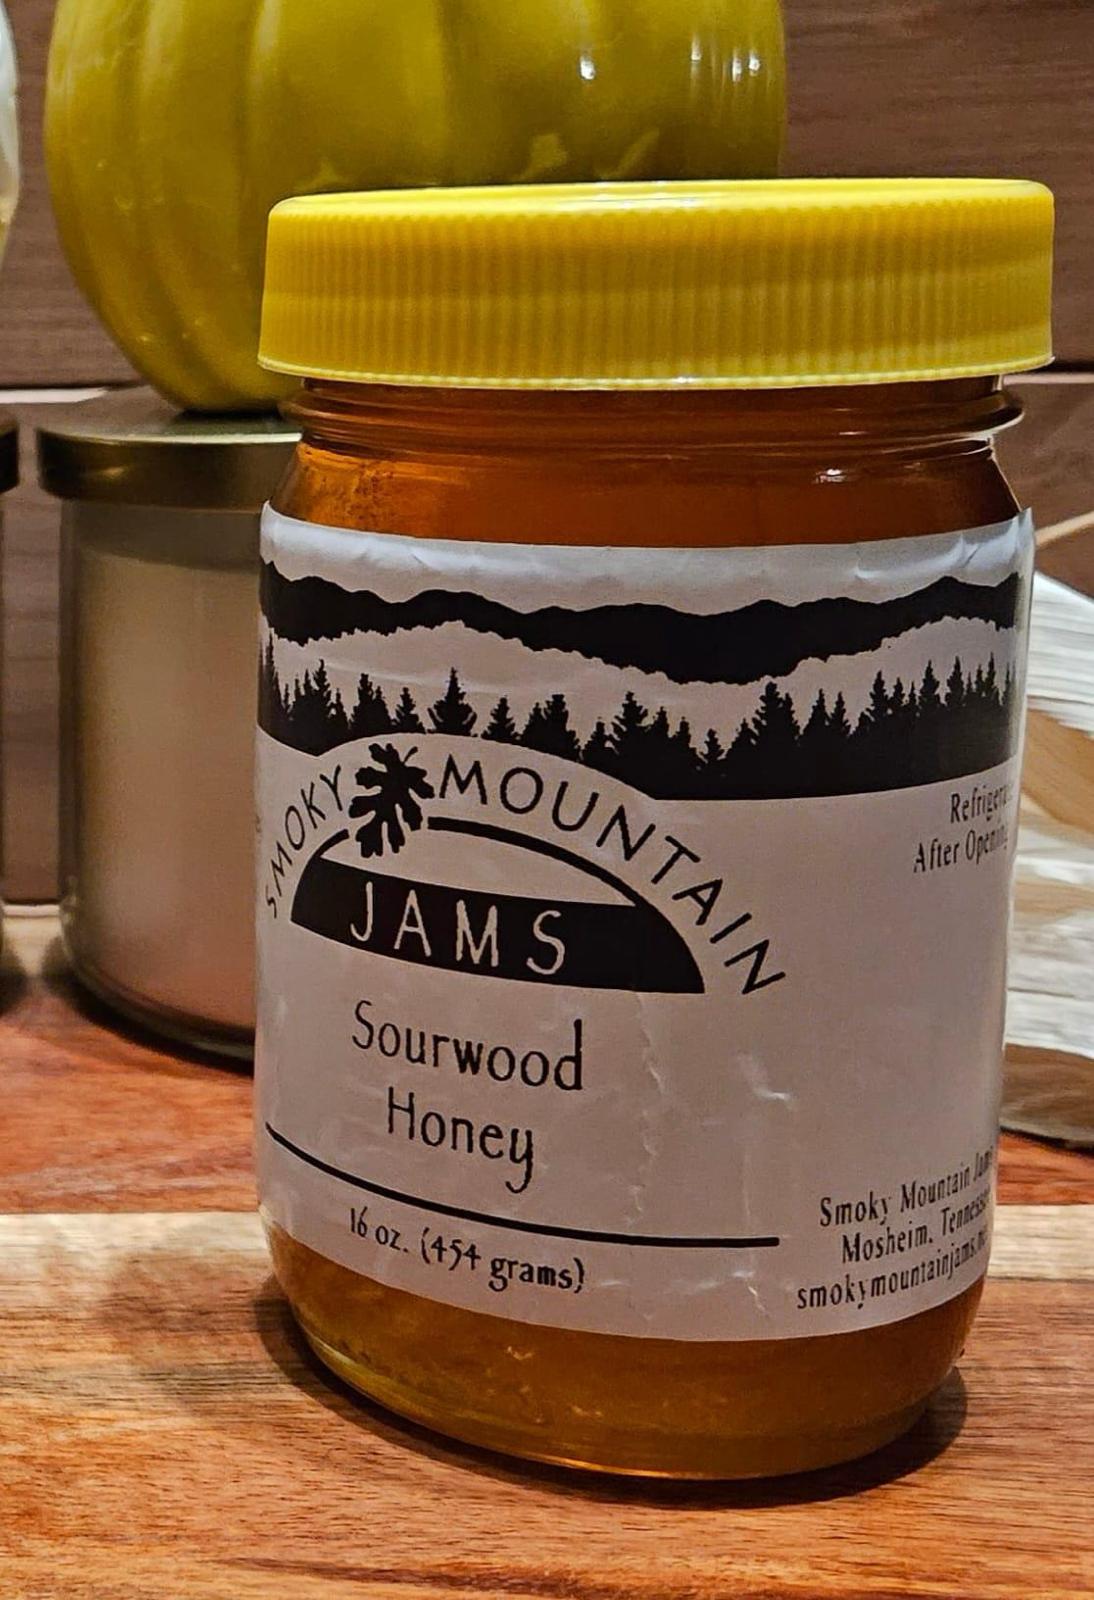 Smoky Mountain Jams Sourwood Honey